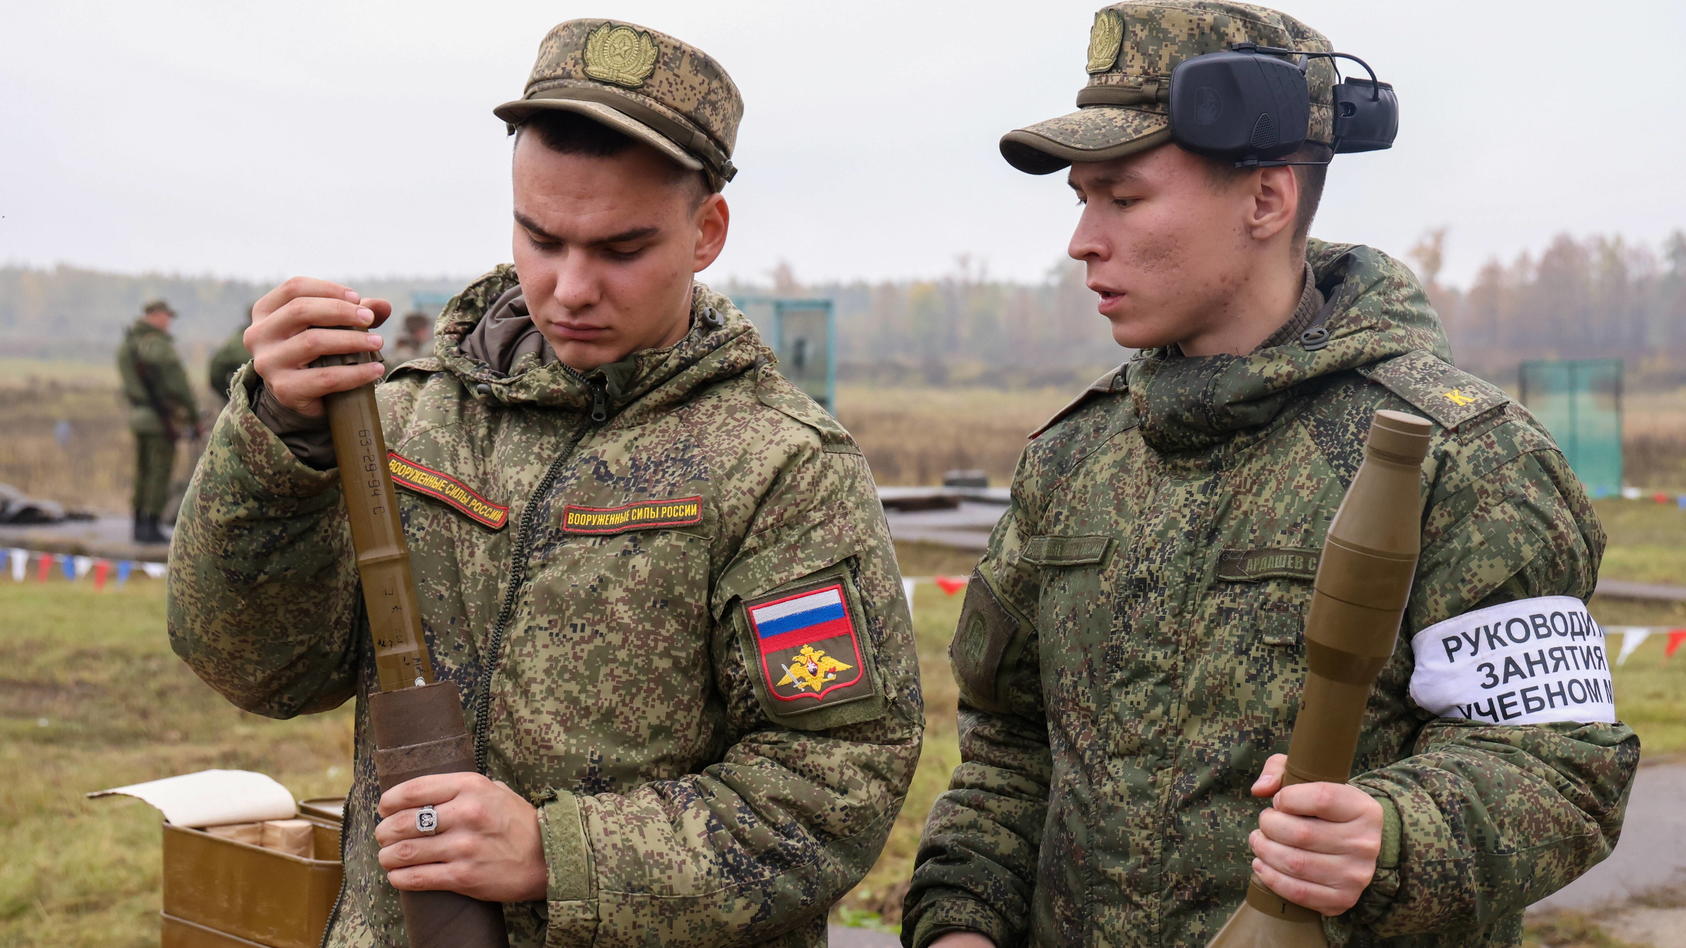 Mobilisierte Reservisten der russischen Armee bei einer Trainingseinheit. Doch vielerorts geben die einberufenen Soldaten ein unprofessionelles Bild ab.